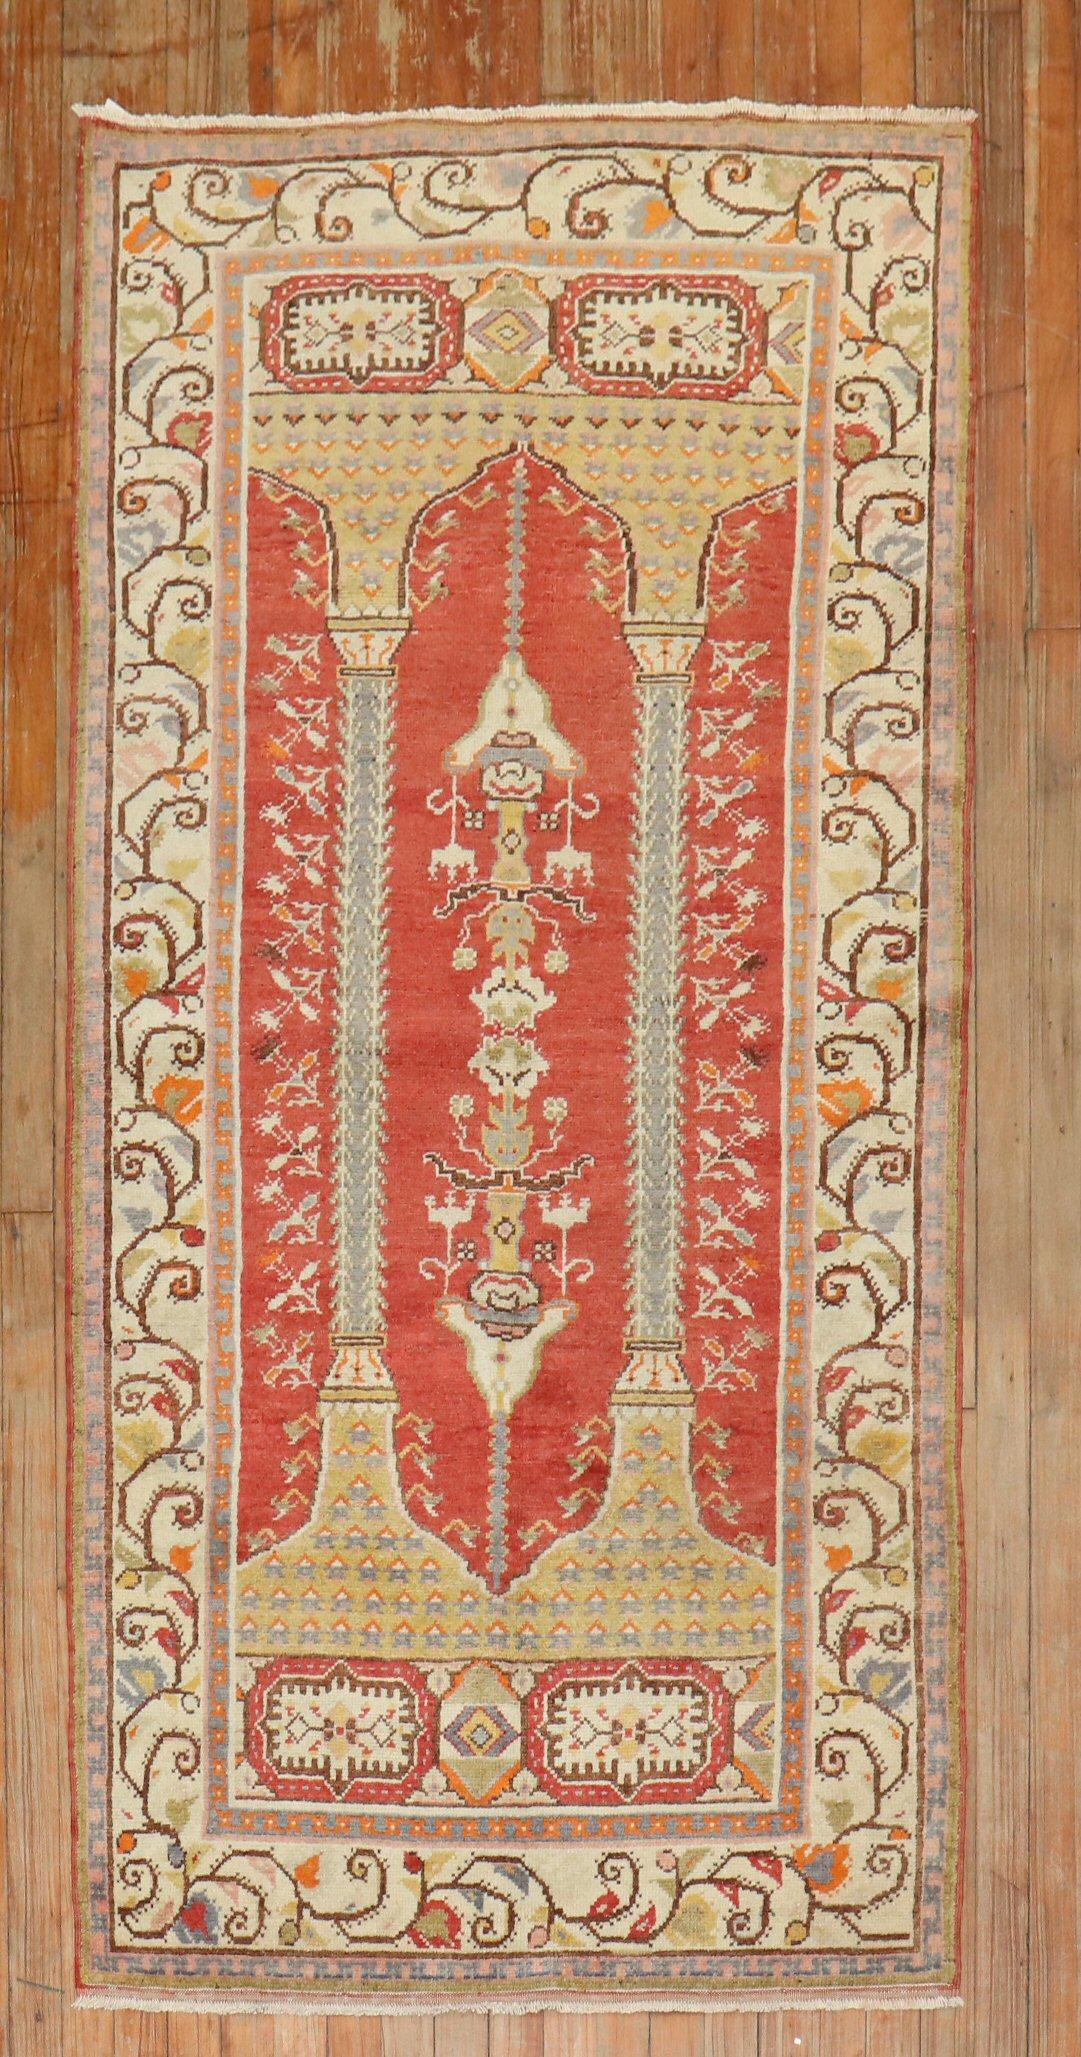 Tapis turc du milieu du siècle avec un motif de prière à double colonne sur fond rouge

Taille : 3'3